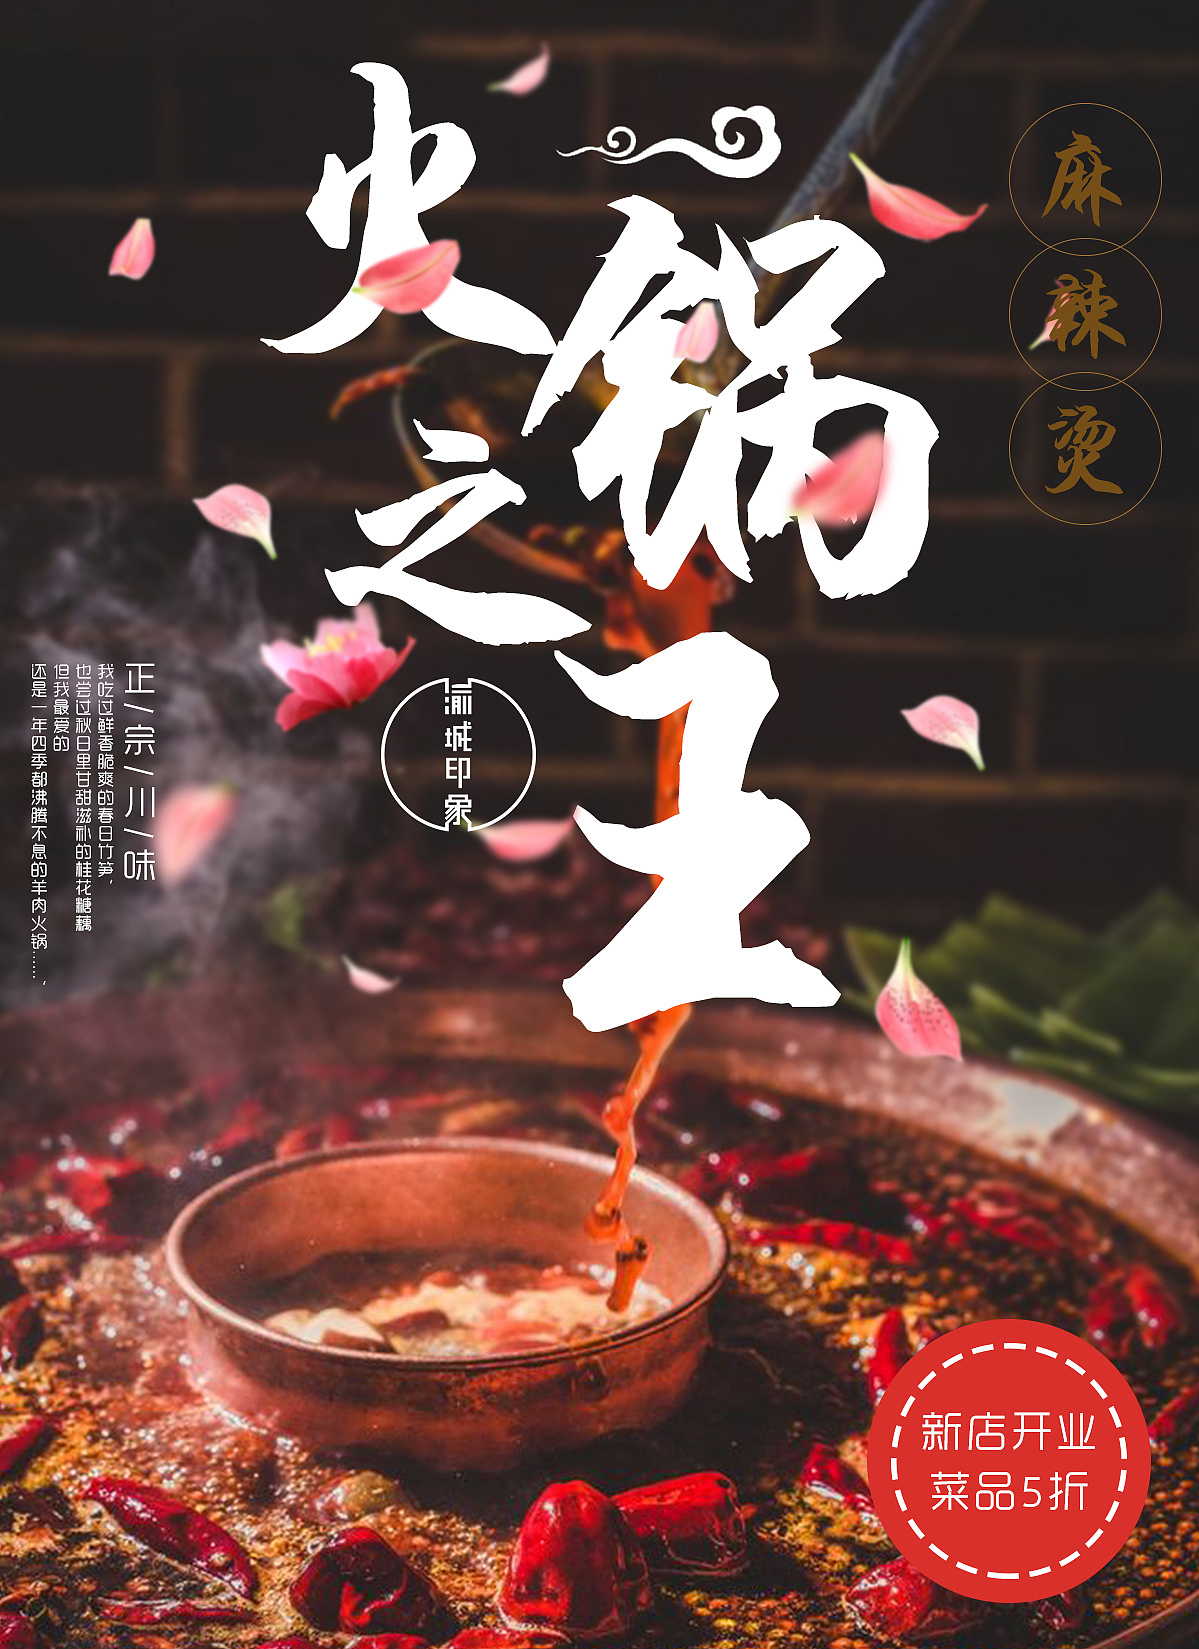 红白色火锅创意餐饮宣传中文海报 - 模板 - Canva可画